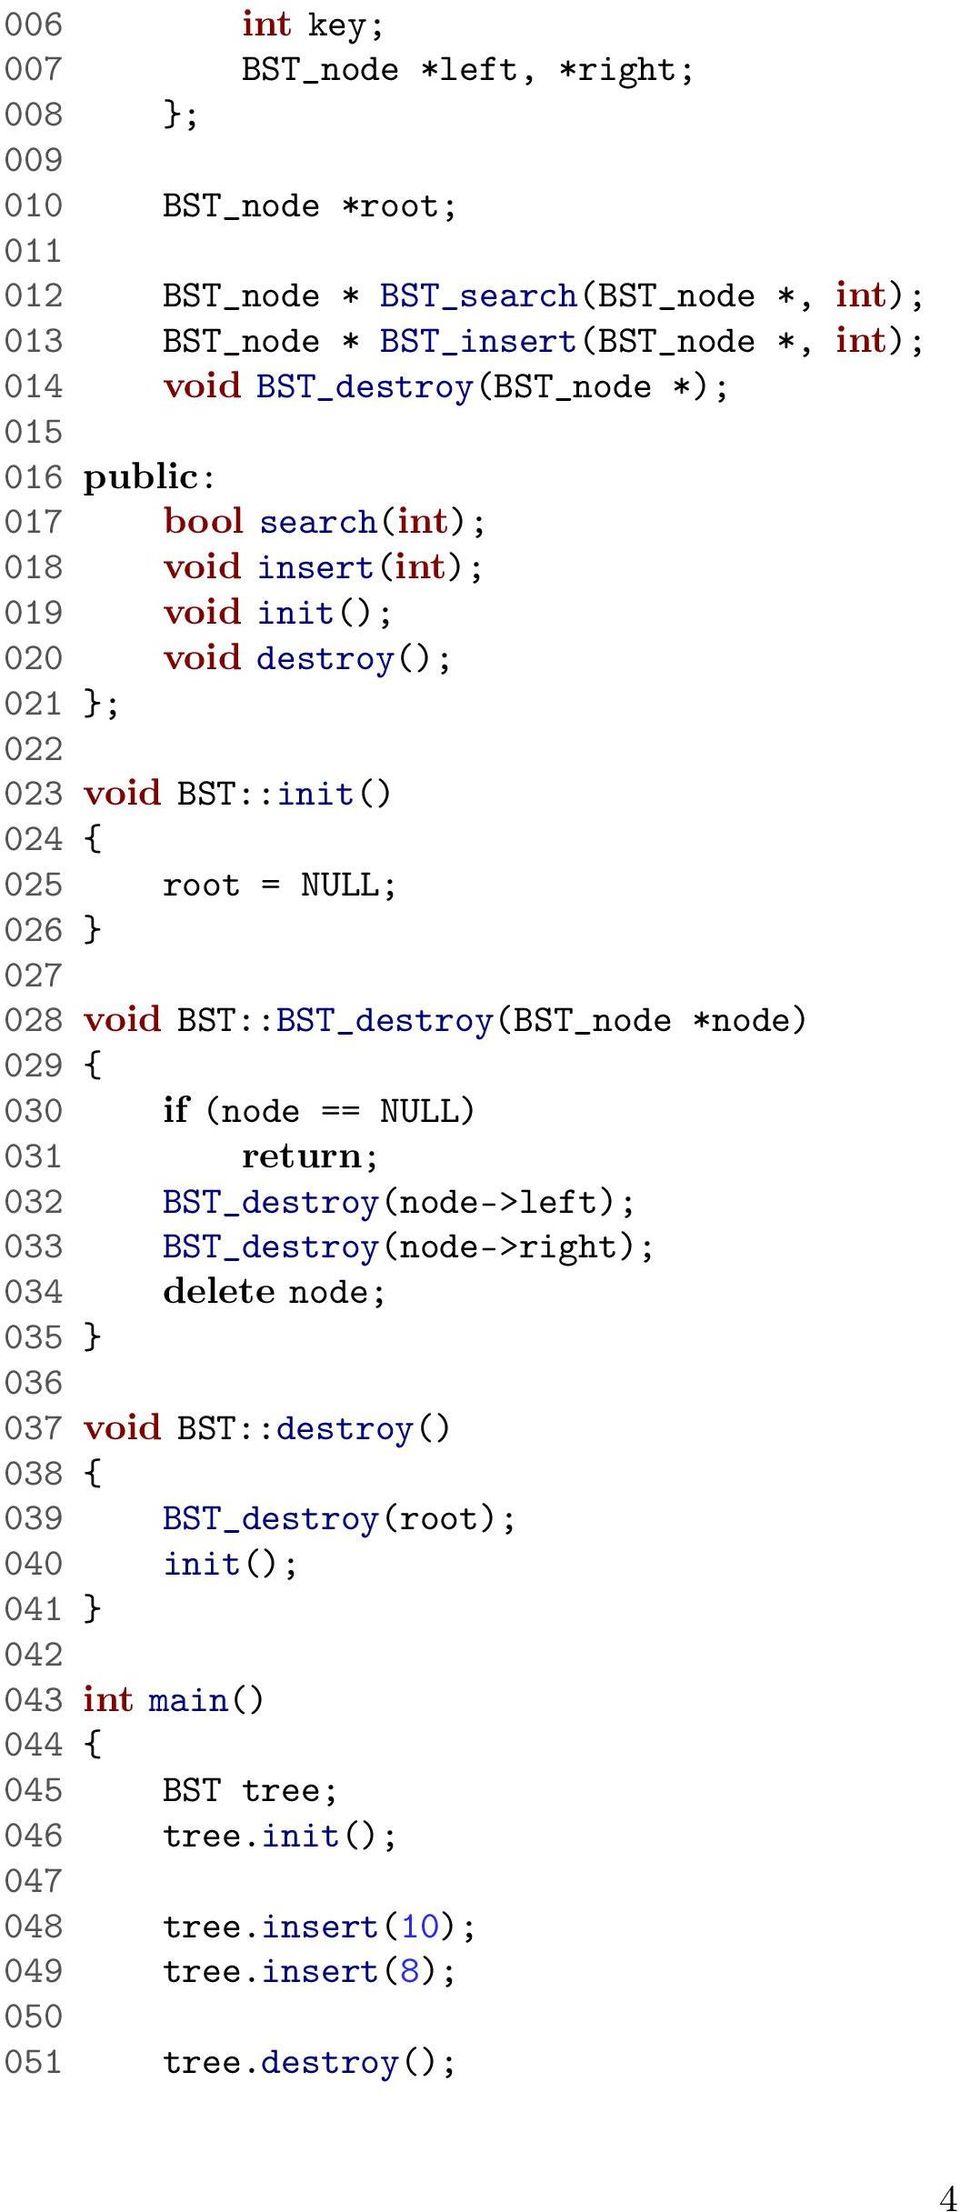 } 027 028 void BST::BST_destroy(BST_node *node) 029 { 030 if (node == NULL) 031 return; 032 BST_destroy(node->left); 033 BST_destroy(node->right); 034 delete node; 035 } 036 037